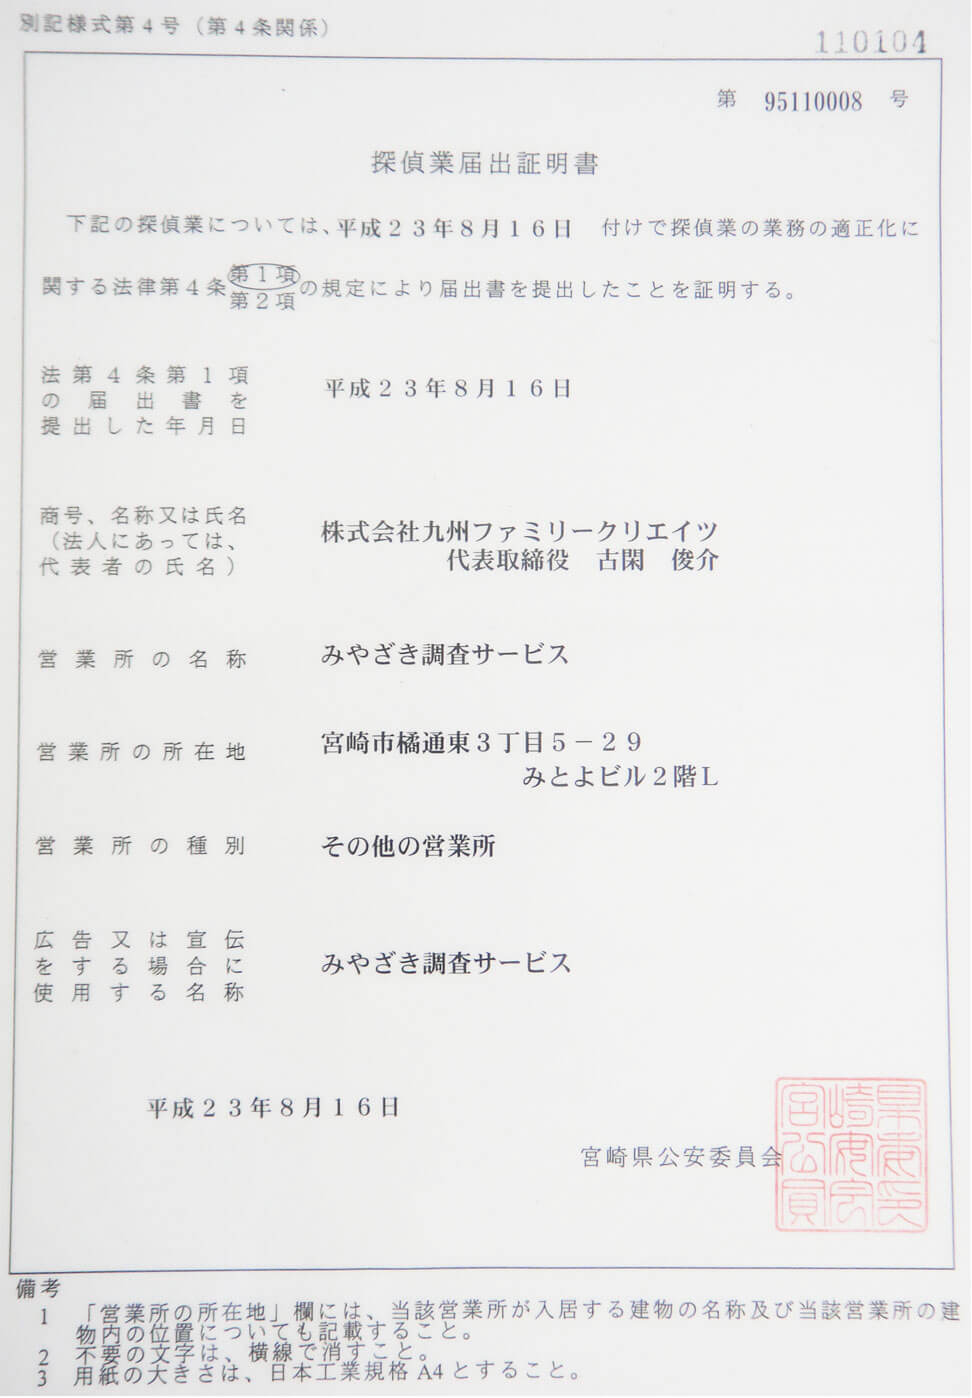 みやざき調査サービス 営業許可証:宮崎県公安委員会届出 第95110008号